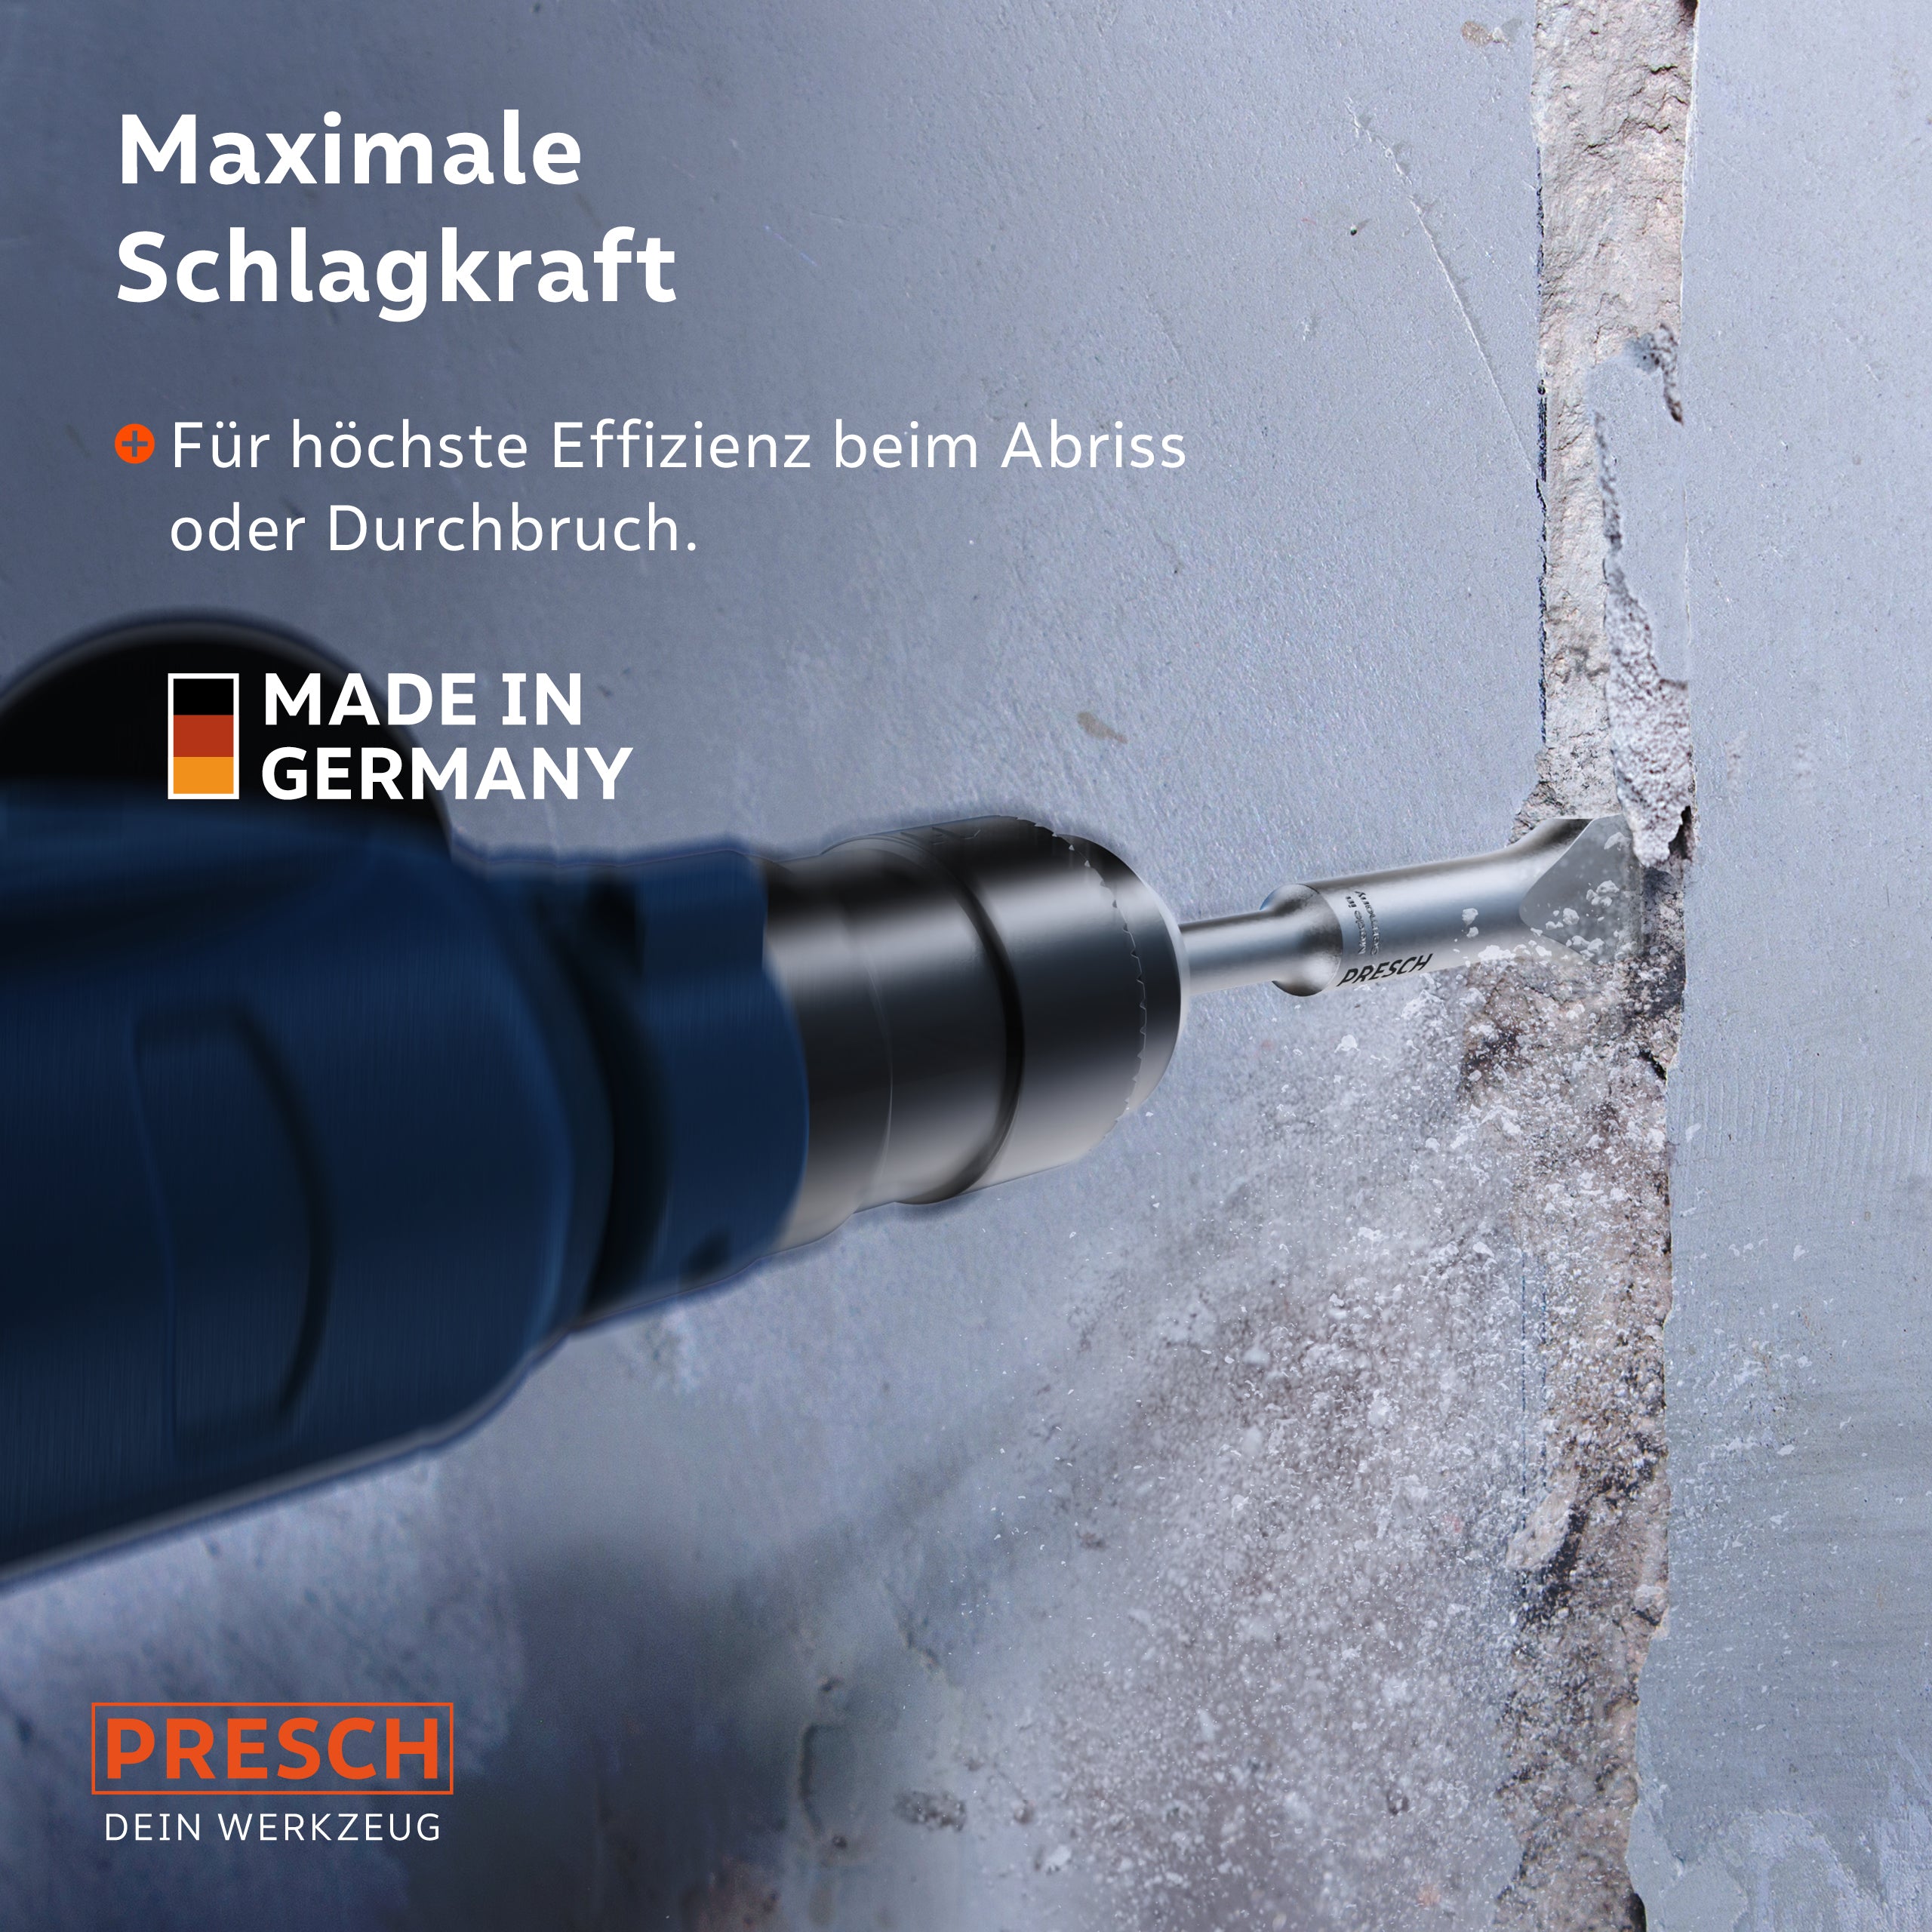 PRESCH Werkzeug mit maximaler Schlagkraft beim Abriss einer Wand, Qualitätswerkzeug Made in Germany